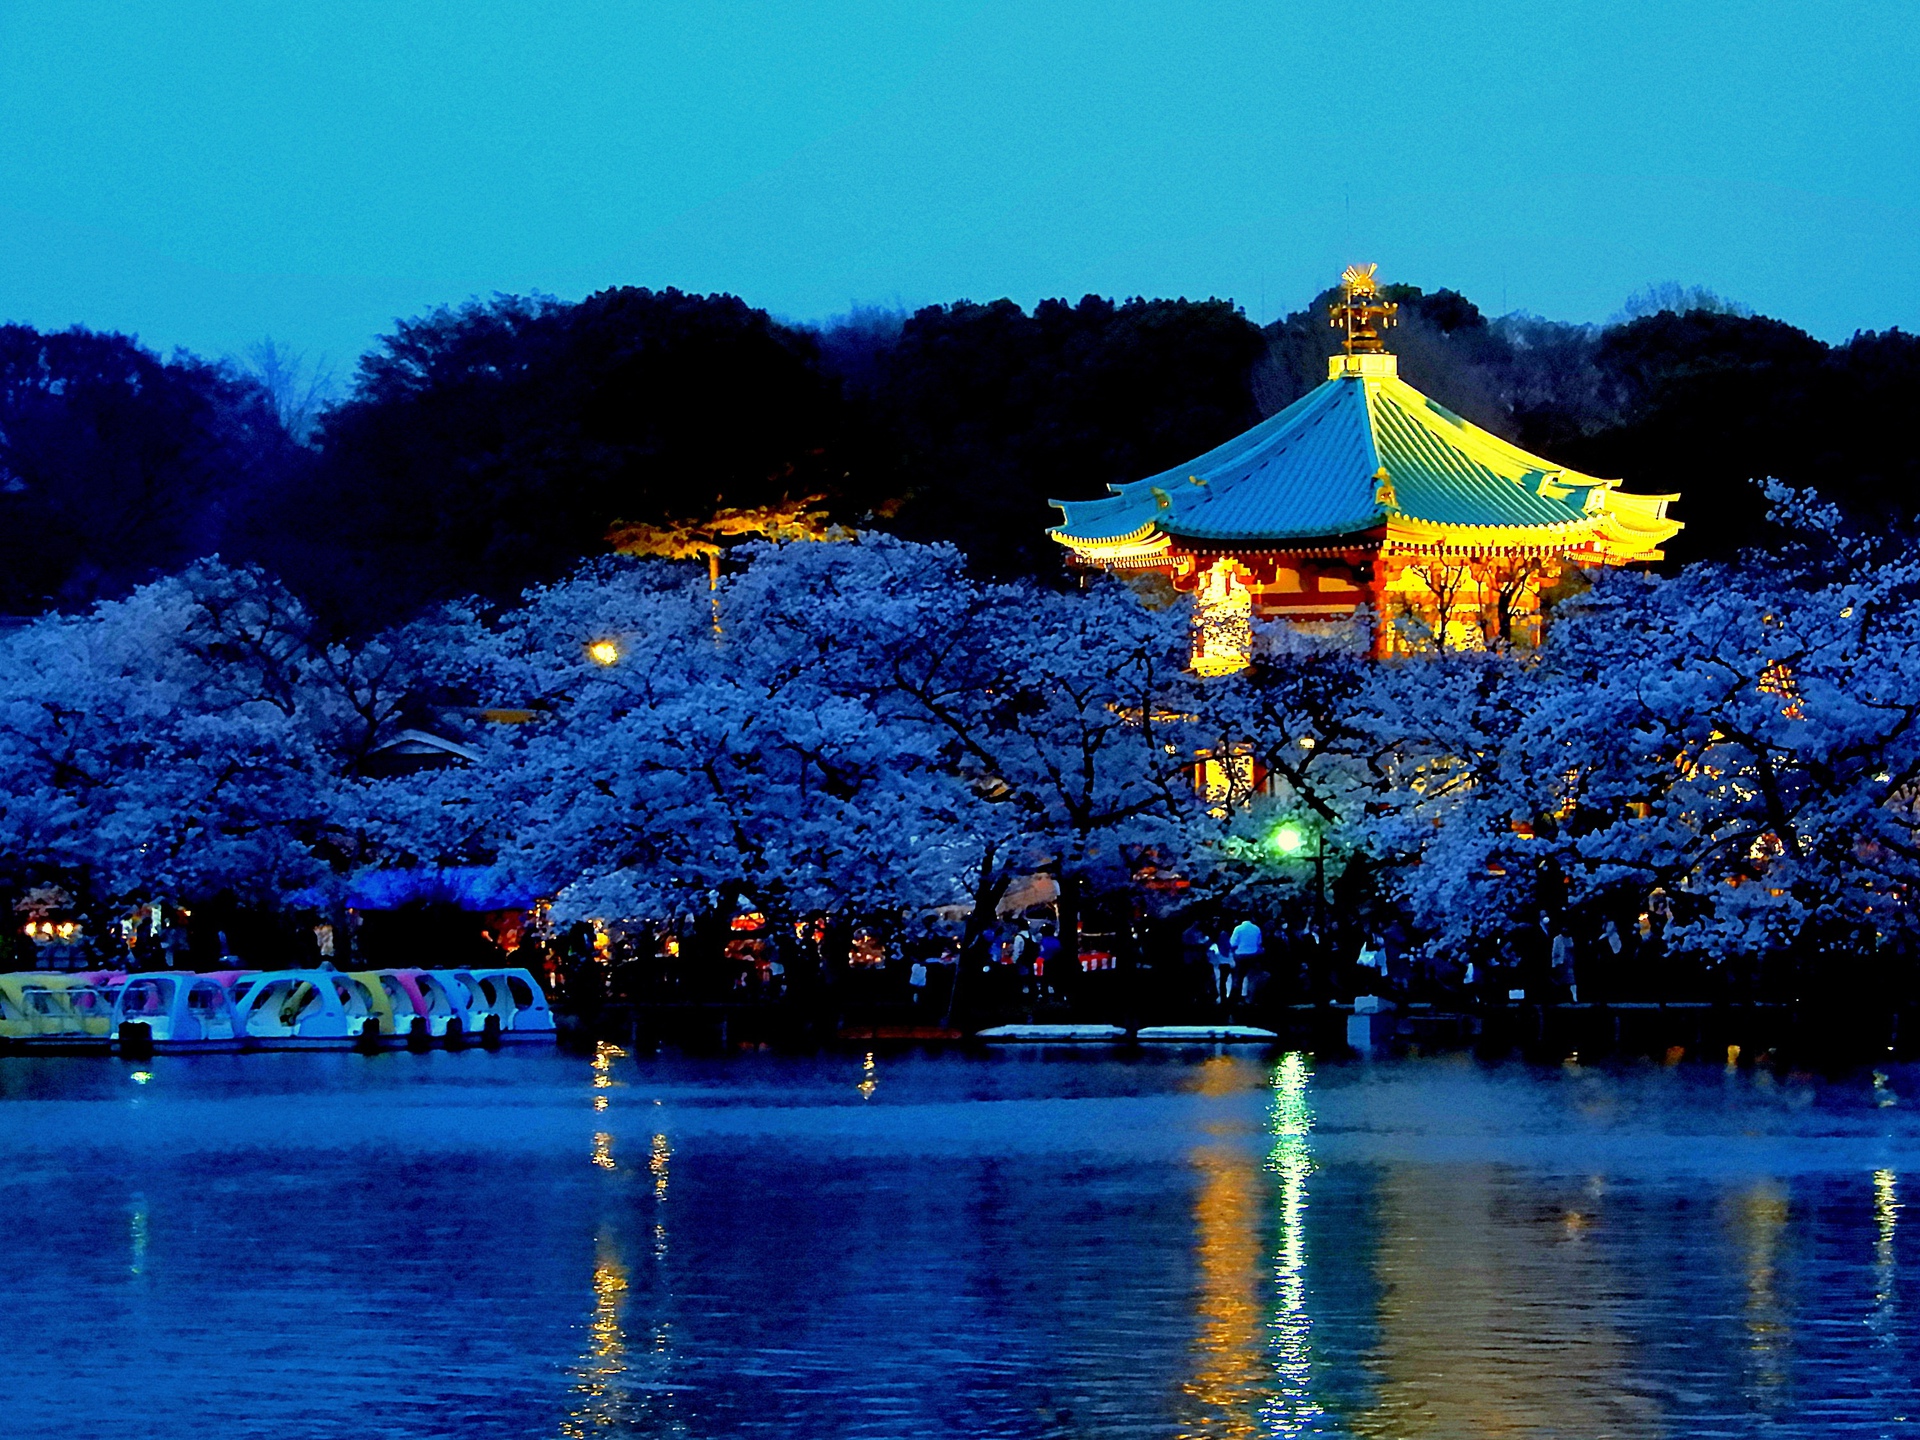 夜景 花火 イルミ 弁天堂と上野公園のの夜桜 壁紙19x1440 壁紙館